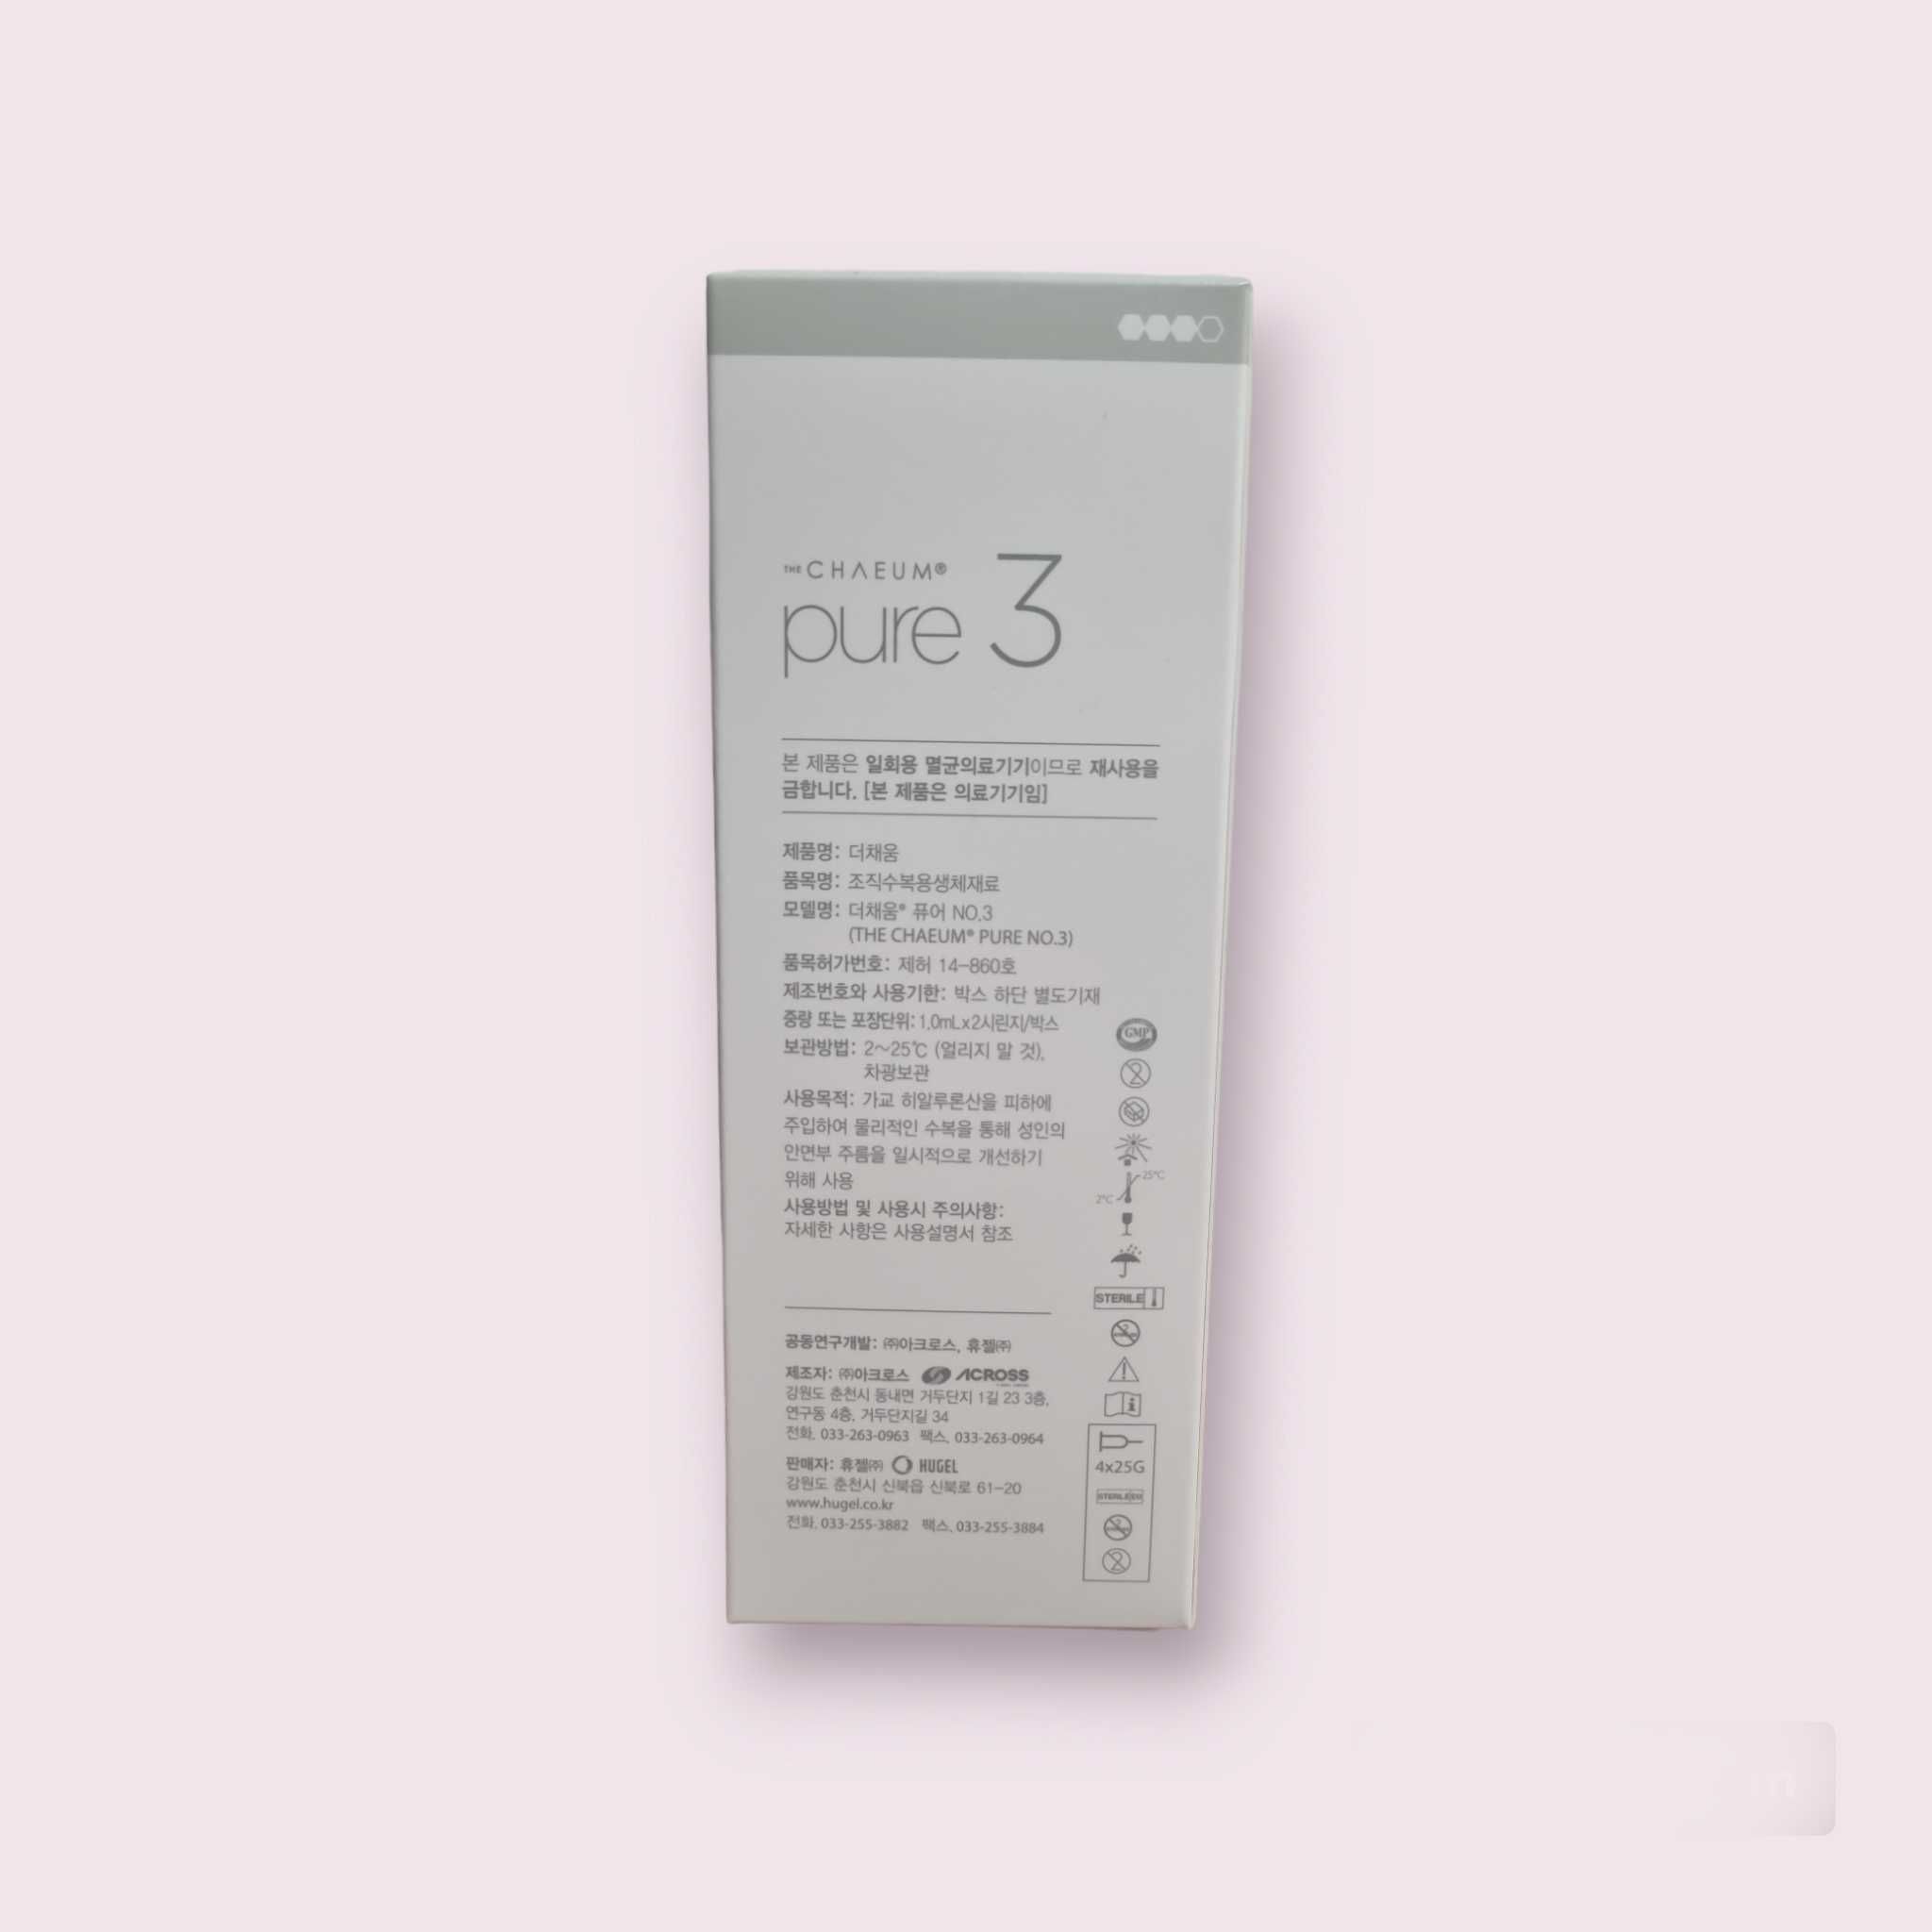 Chaeum pure 3 (1x1 ml)